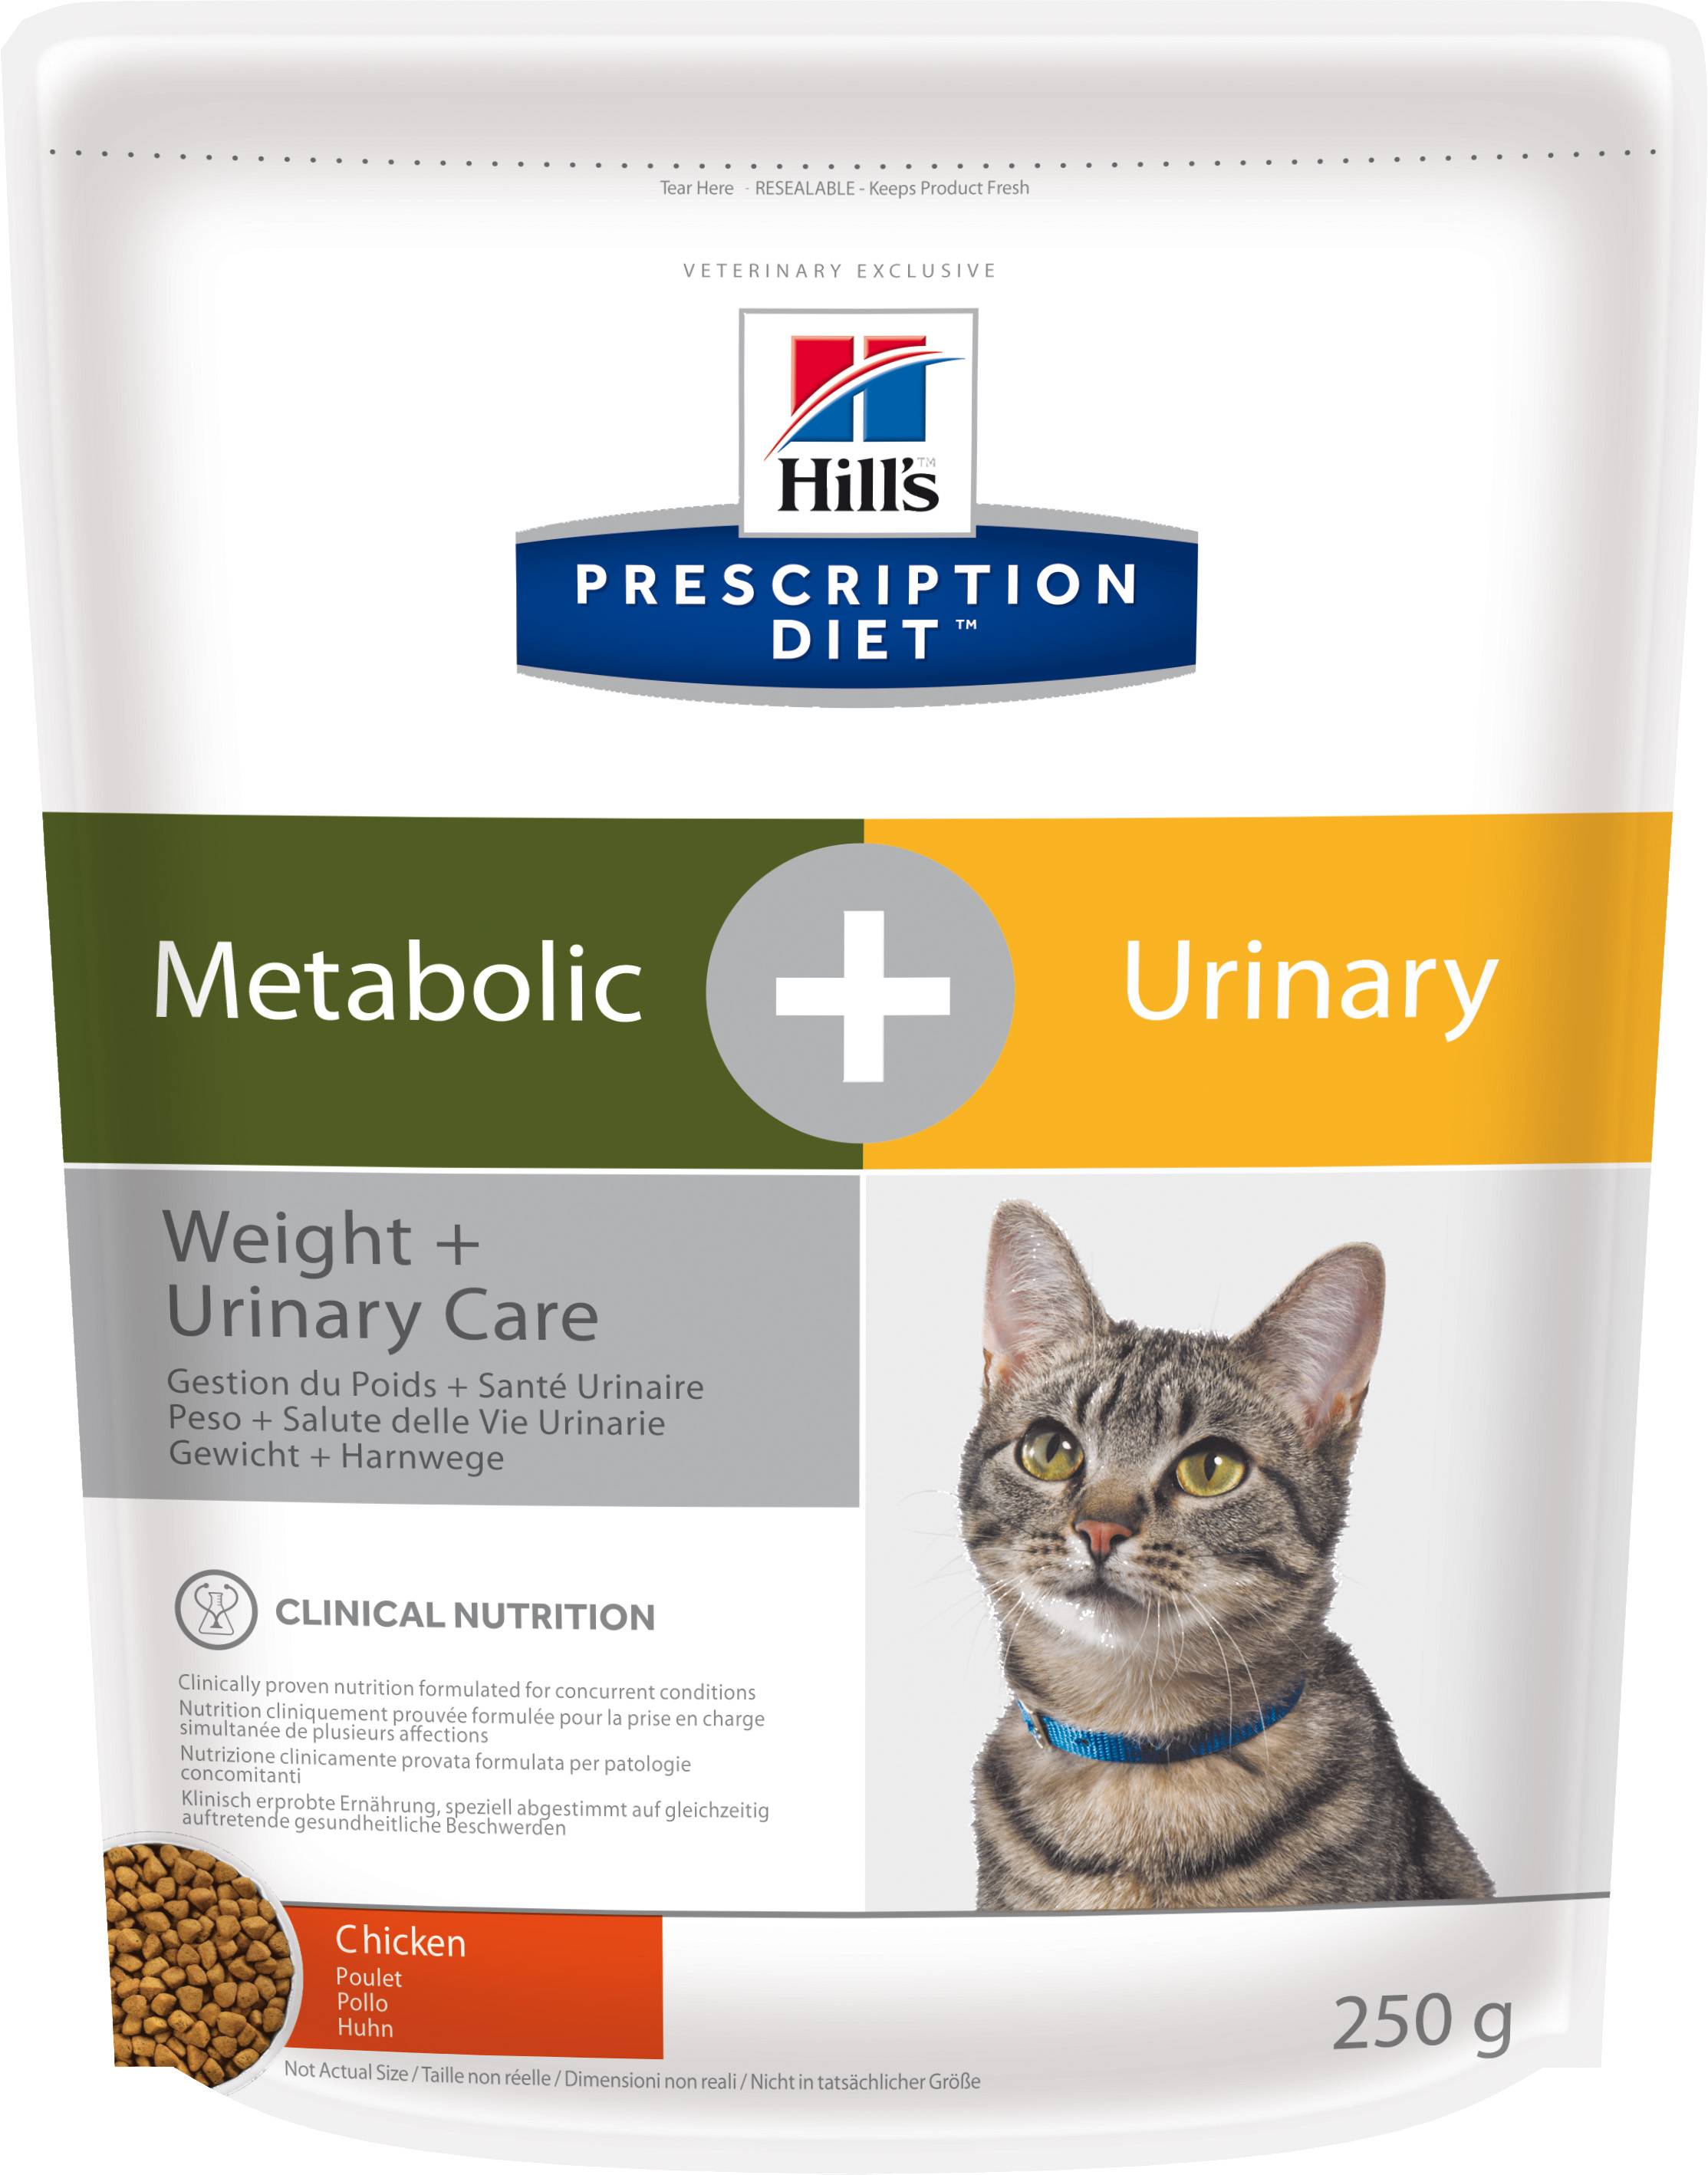 Корм hill's prescription diet для кошек: отзывы и разбор состава - петобзор